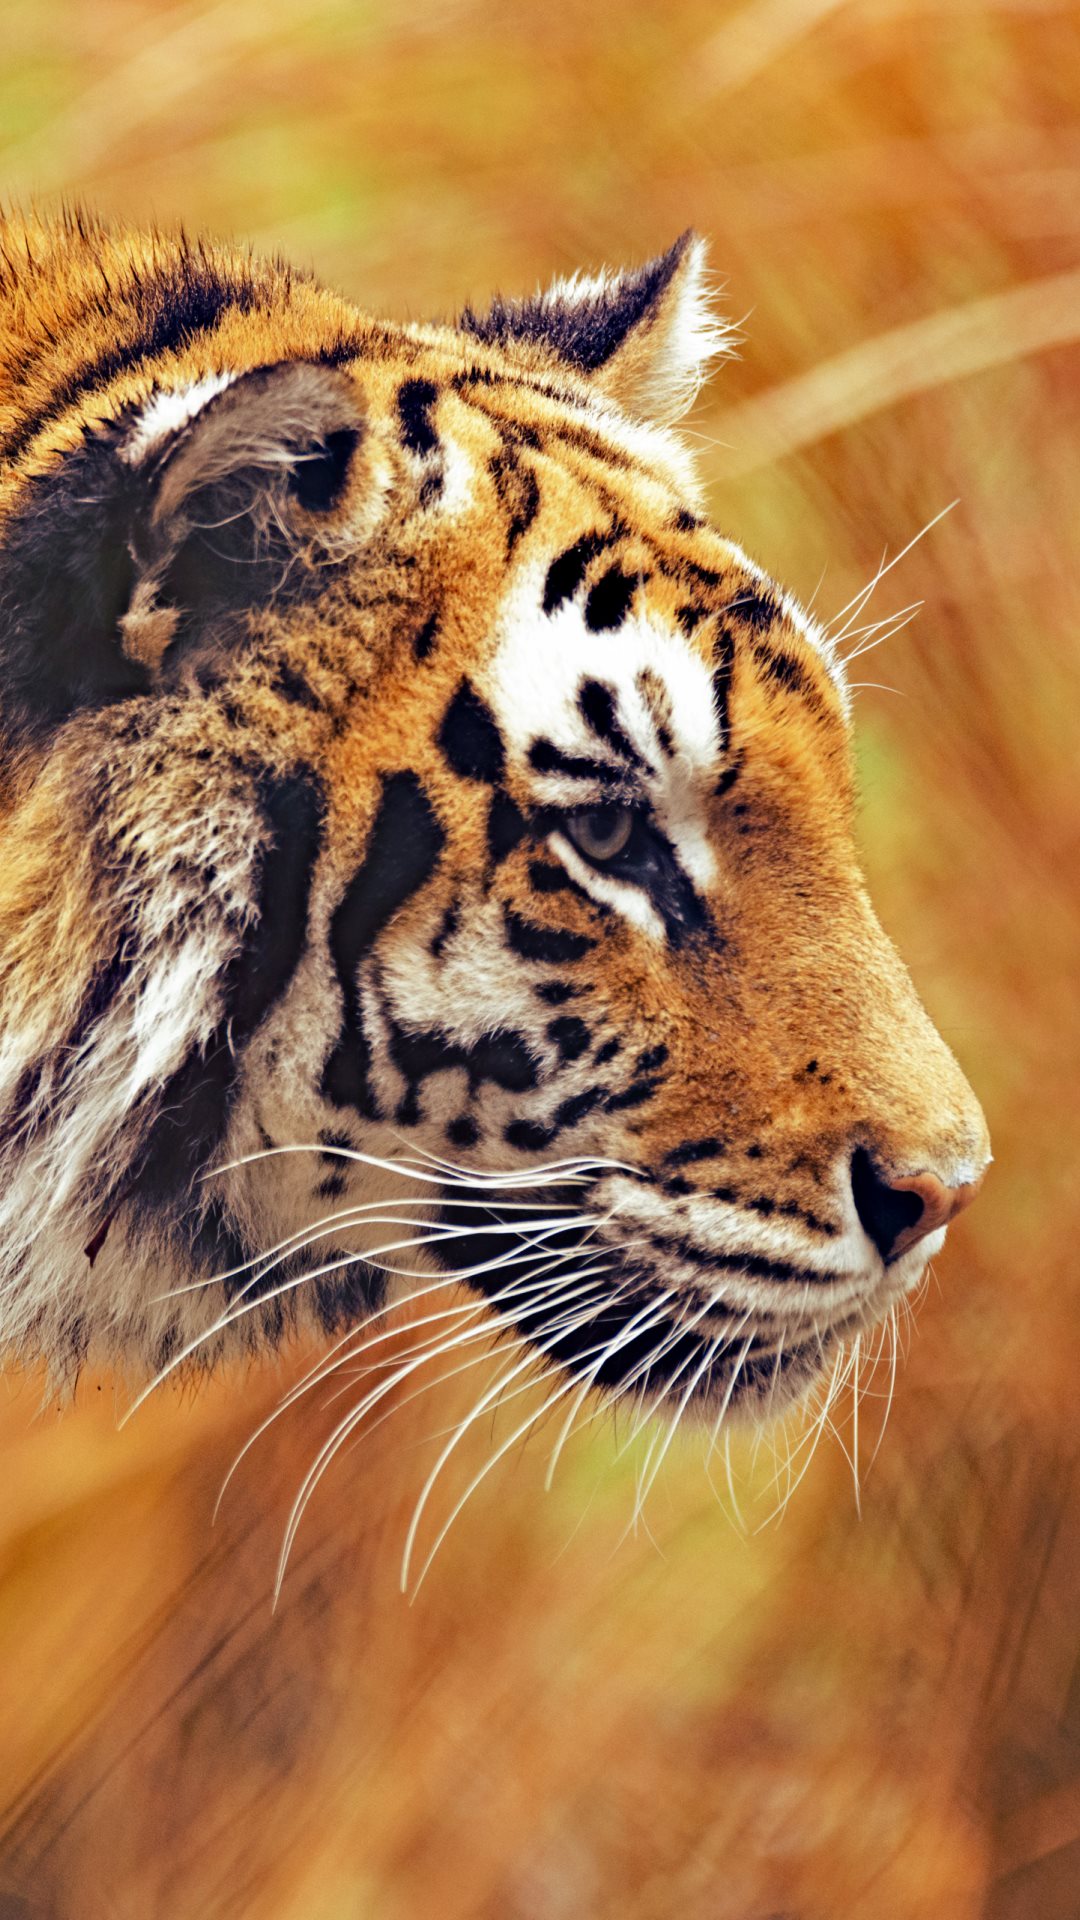 ultra hd wallpaper für handys,landtier,tierwelt,tiger,bengalischer tiger,schnurrhaare